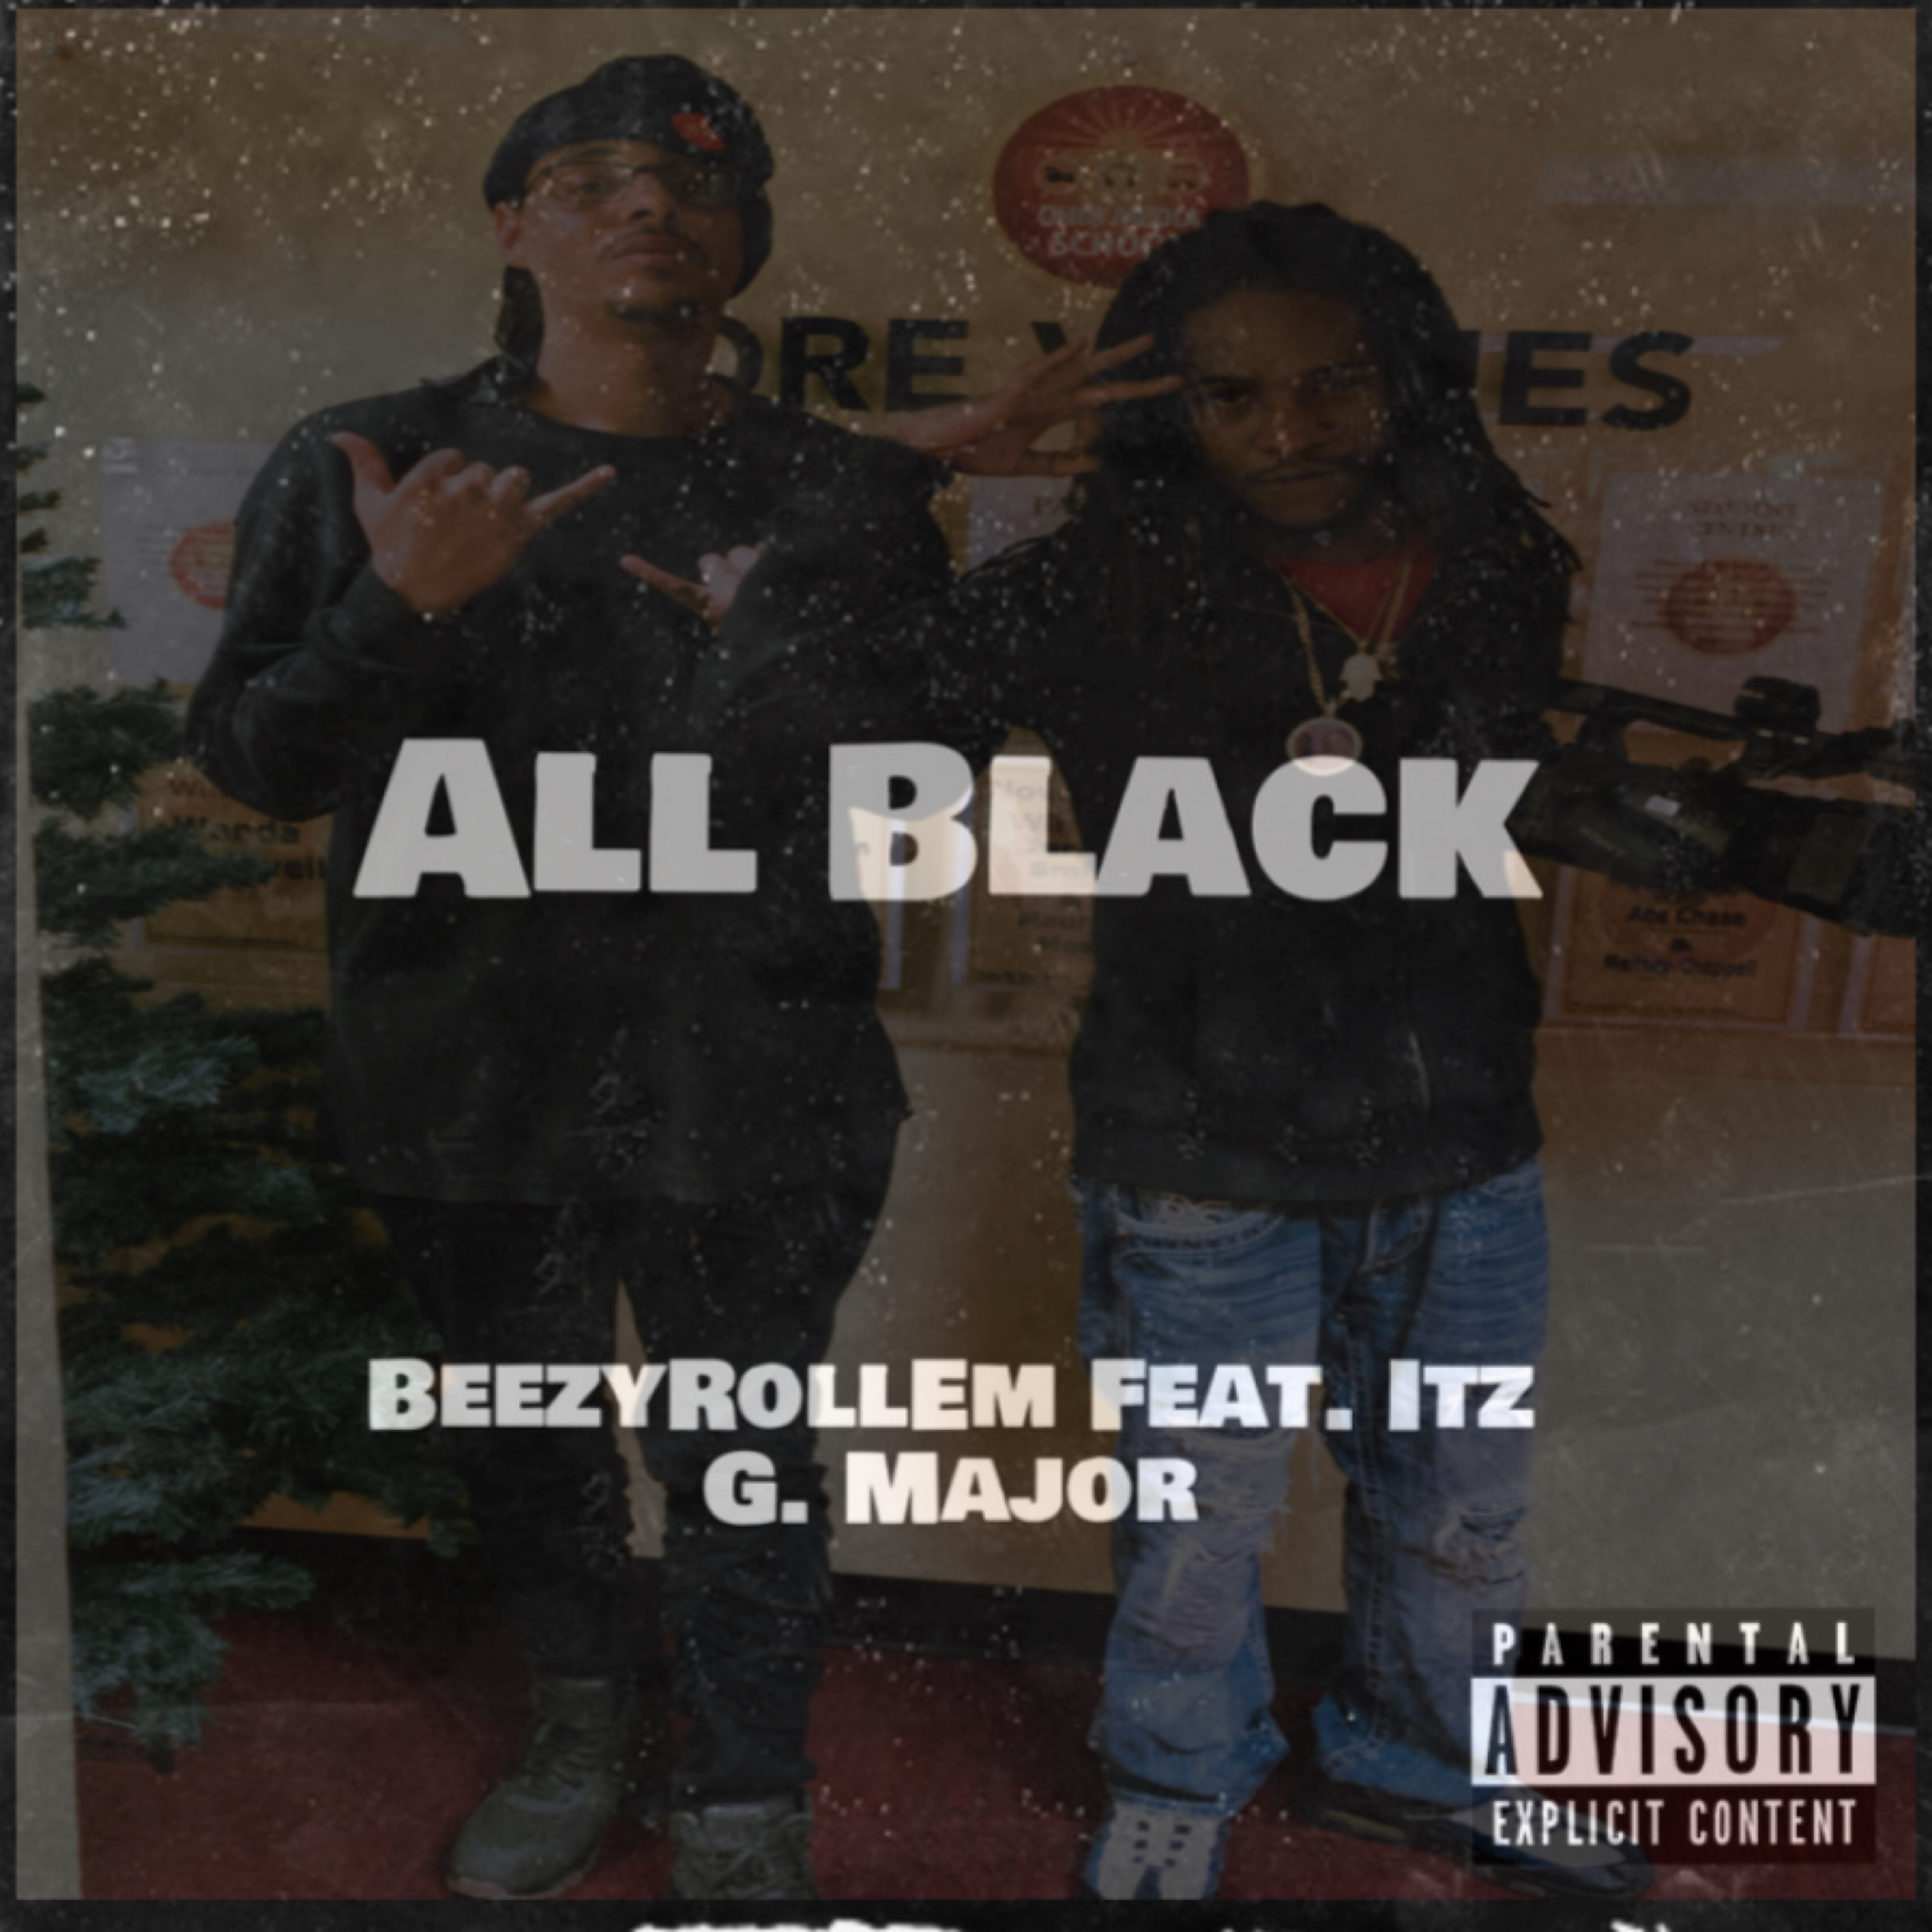 Art for All Black ft. Itz G Major by BeezyRollEm